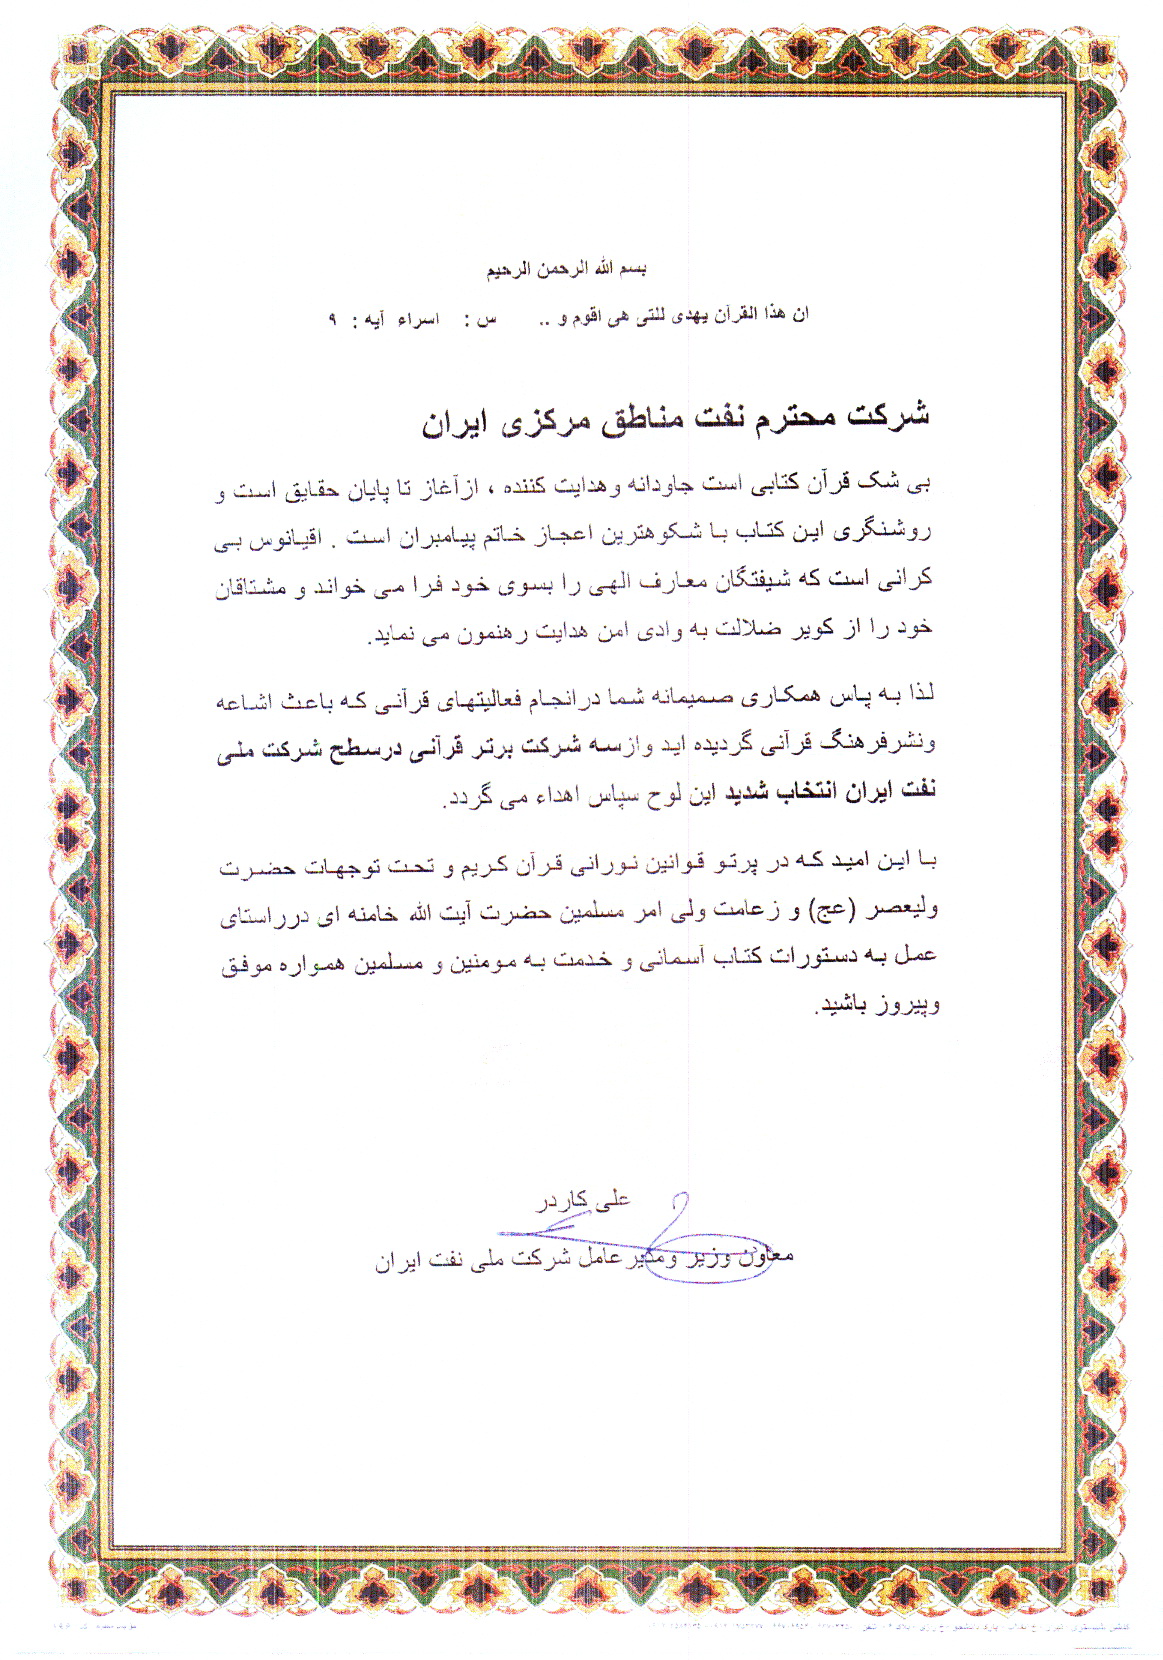 پیام تبریک مهندس کاردر به شرکت نفت مناطق مرکزی ایران